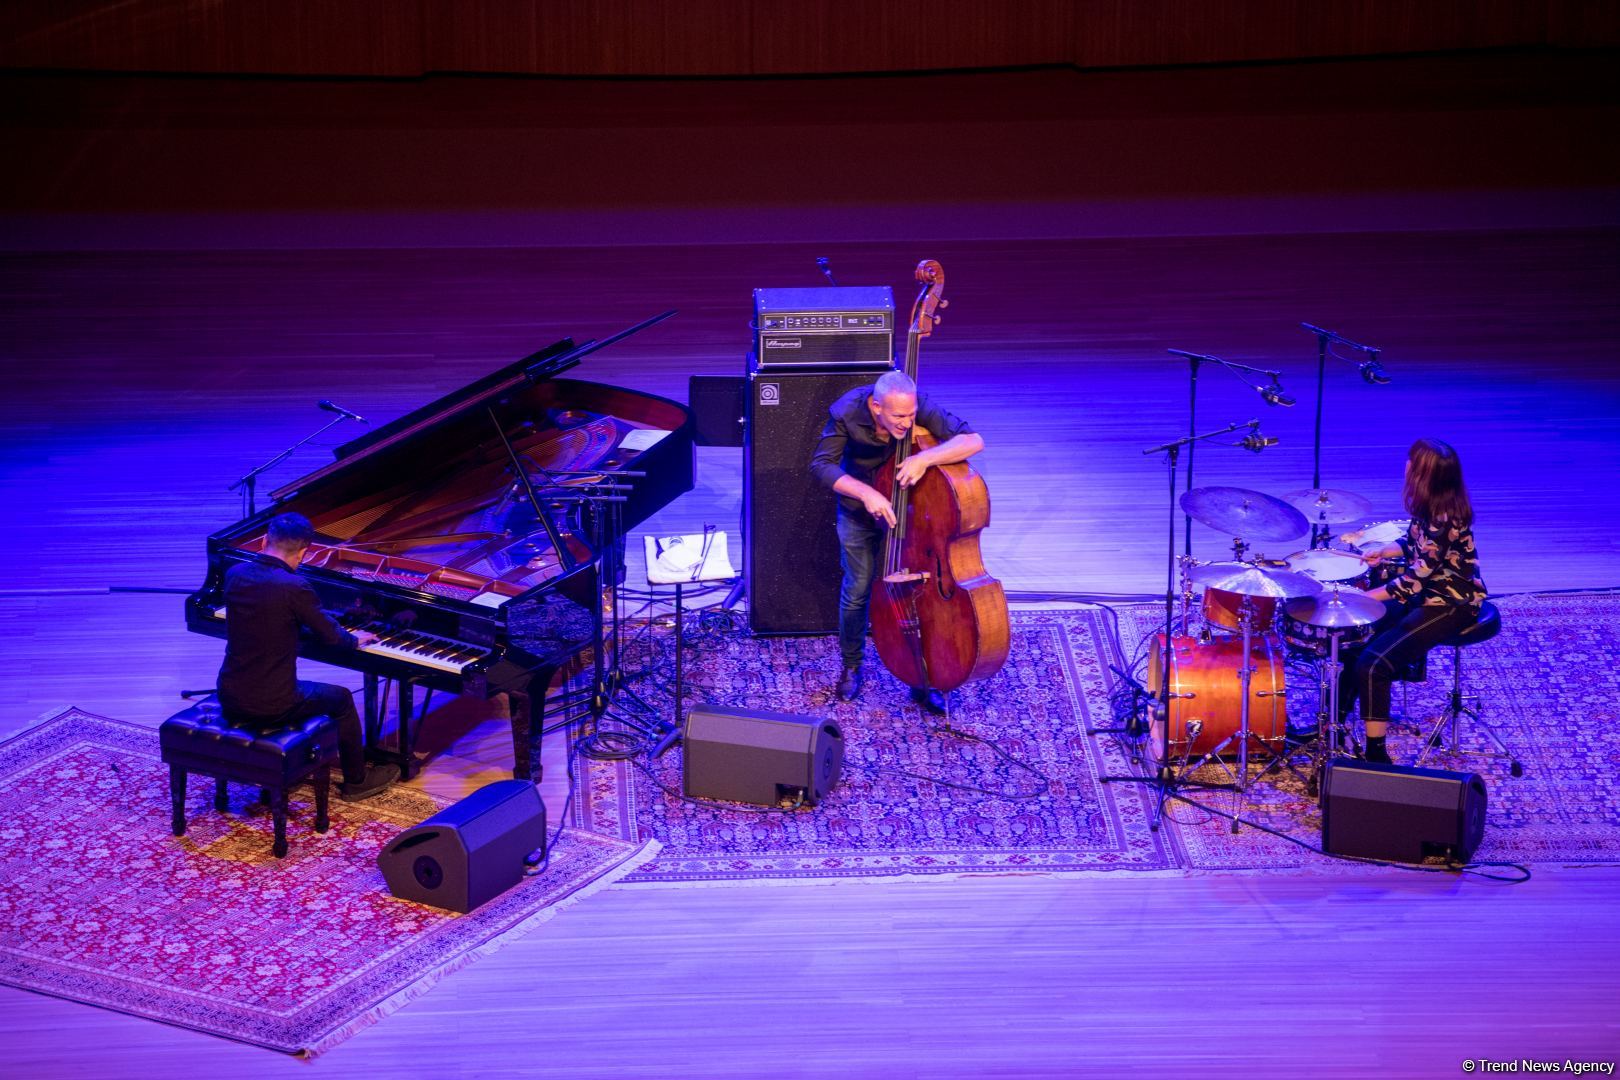 Heydər Əliyev Mərkəzində “Avişai Koen trio”nun caz konserti keçirilib (FOTO/VİDEO) - Gallery Image